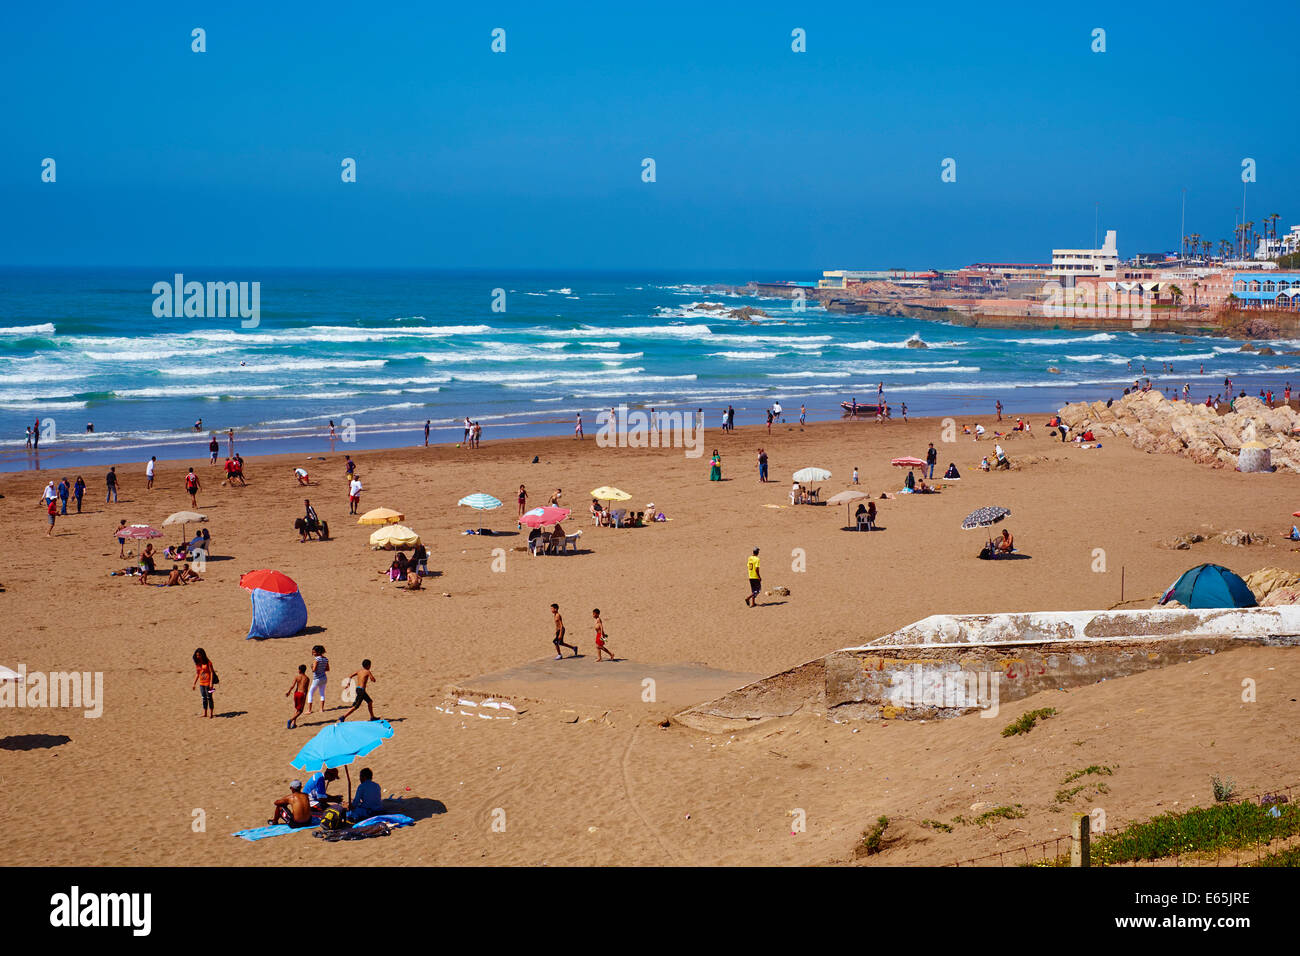 Morocco, Casablanca, Ain Diab beach Stock Photo